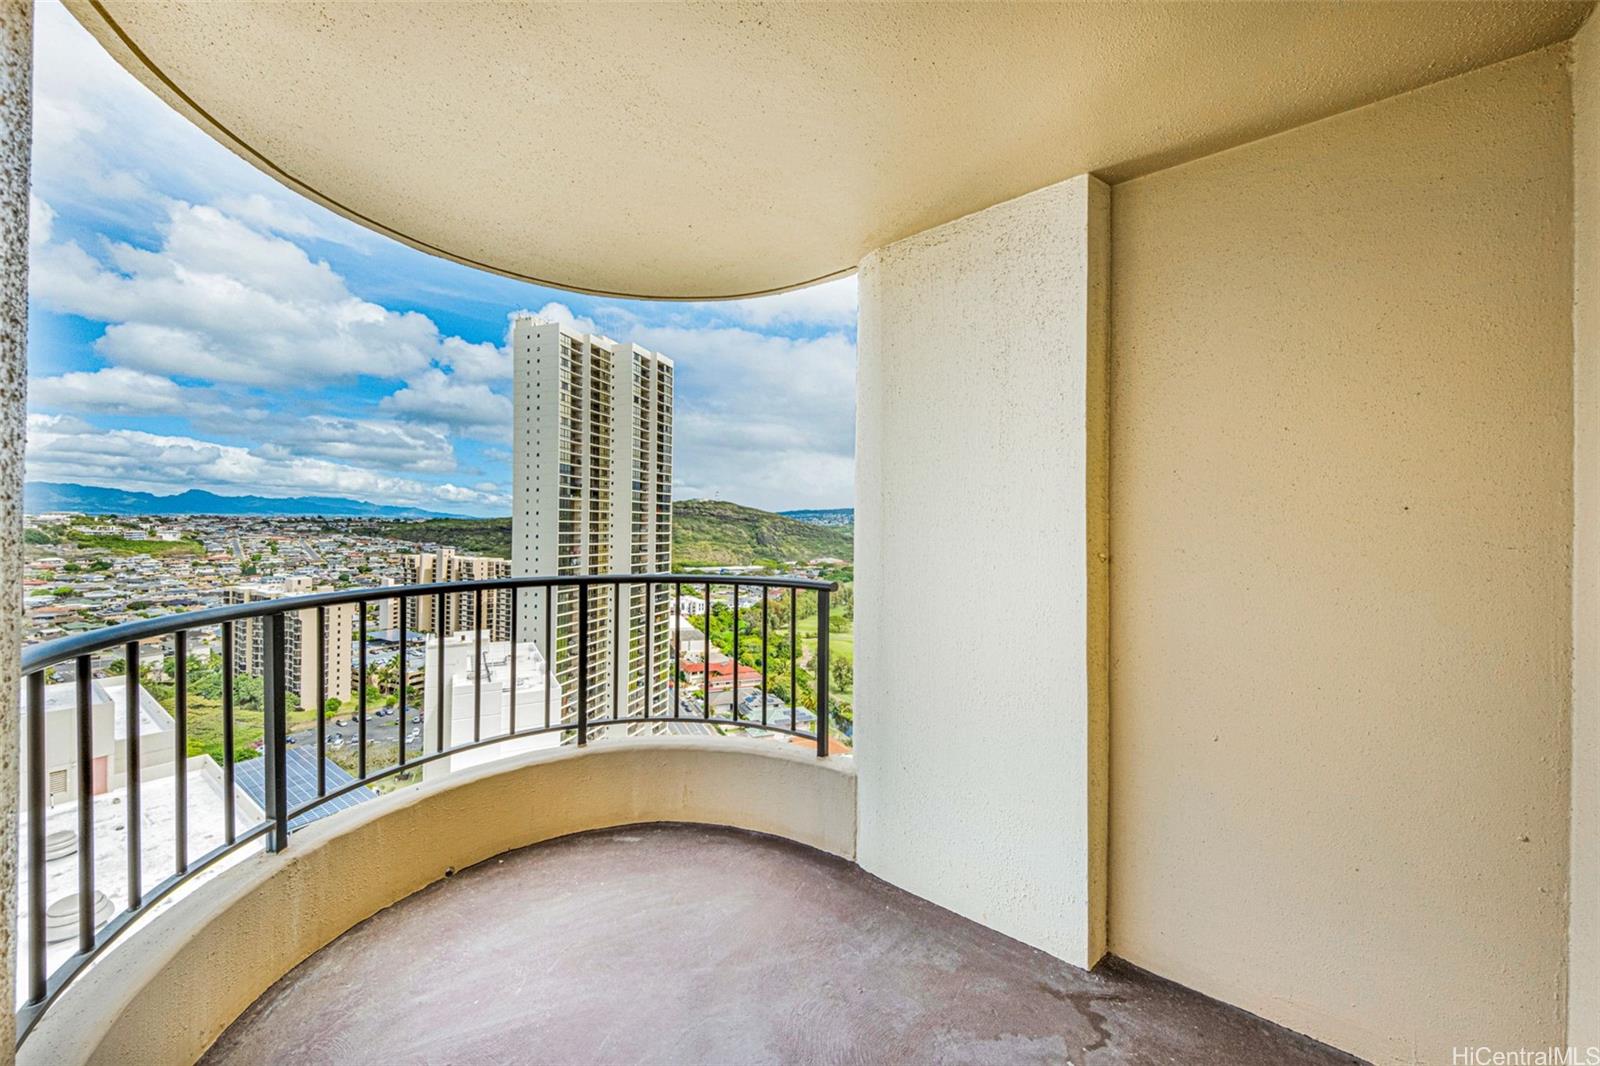 Horizon View Tower condo # 25C, Honolulu, Hawaii - photo 2 of 25